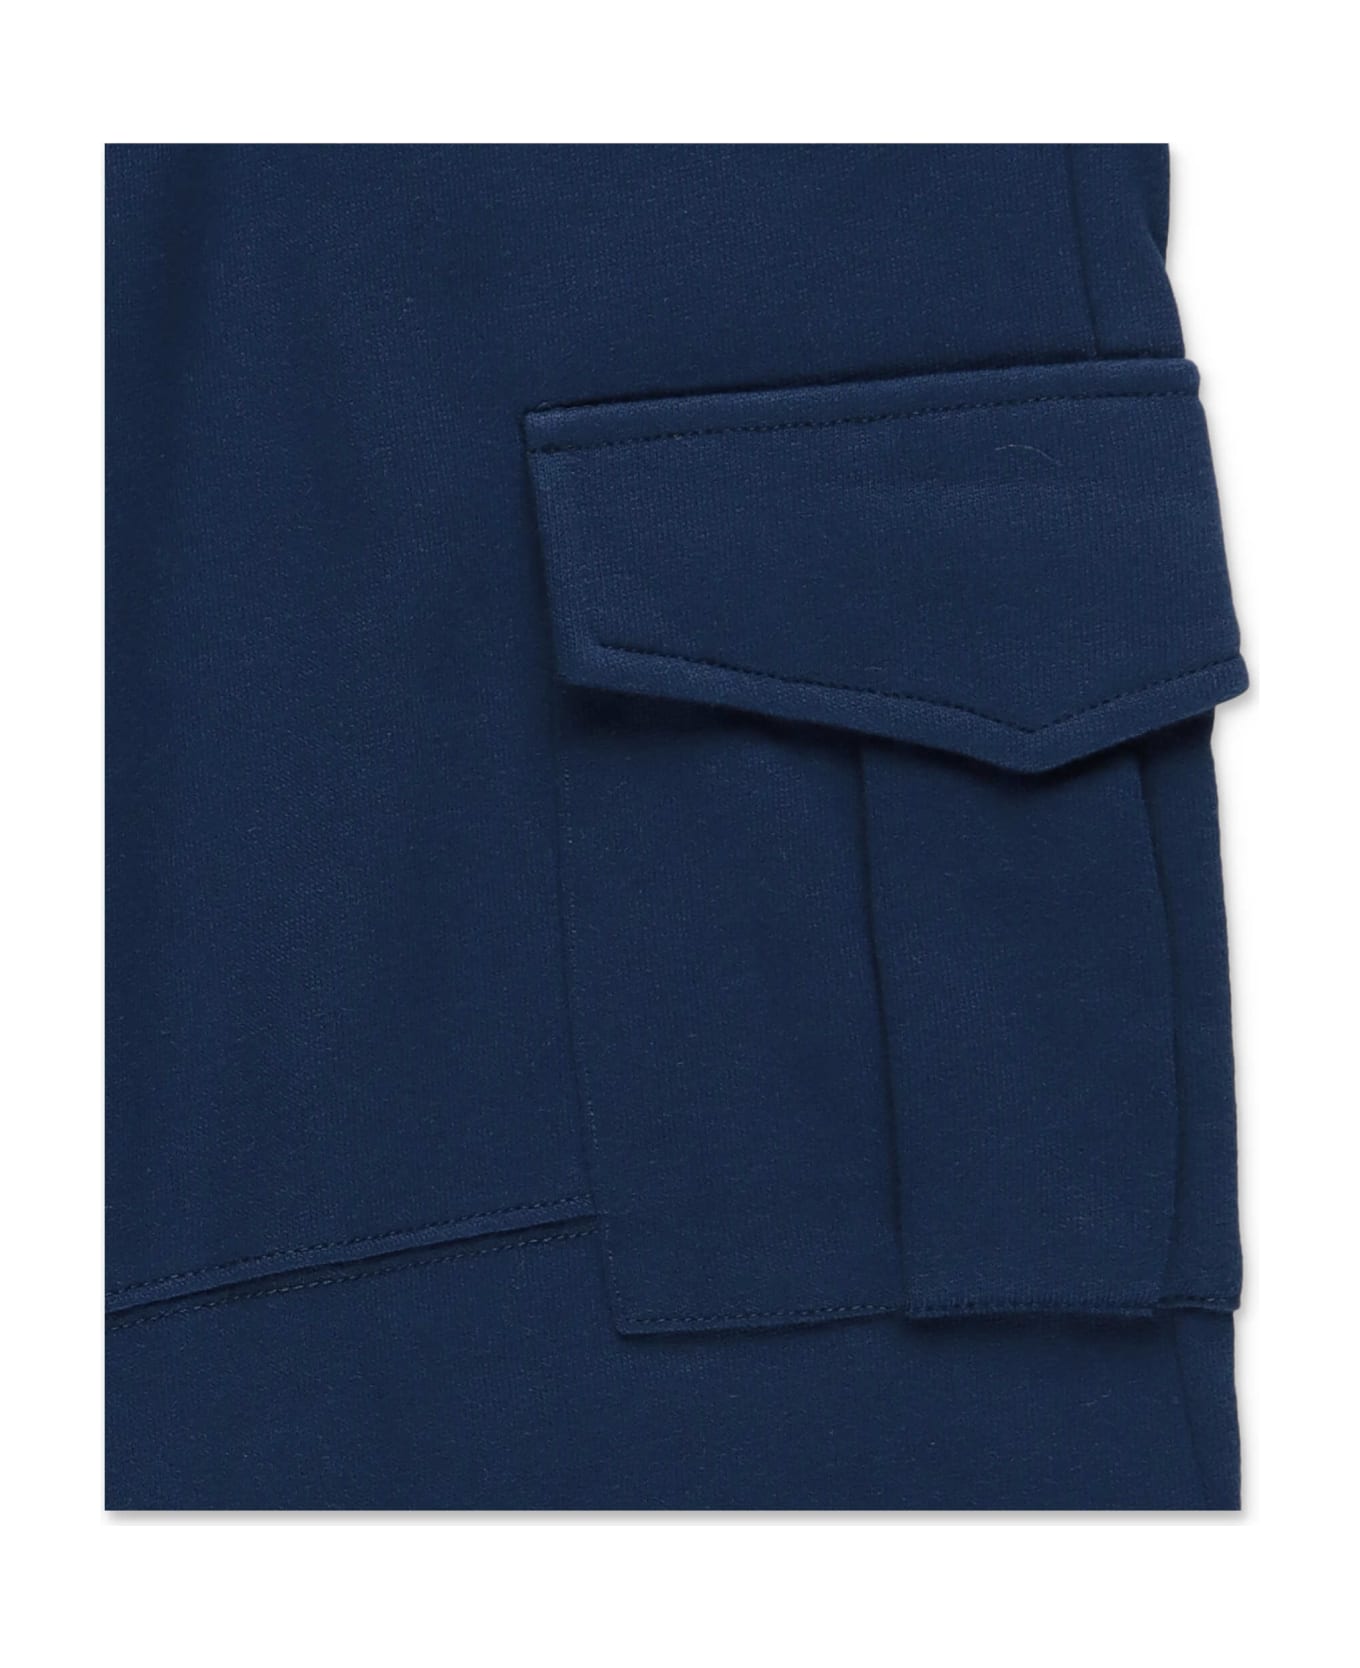 Stella McCartney Kids Stella Mccartney Pantaloni Blu In Felpa Di Cotone - Blu